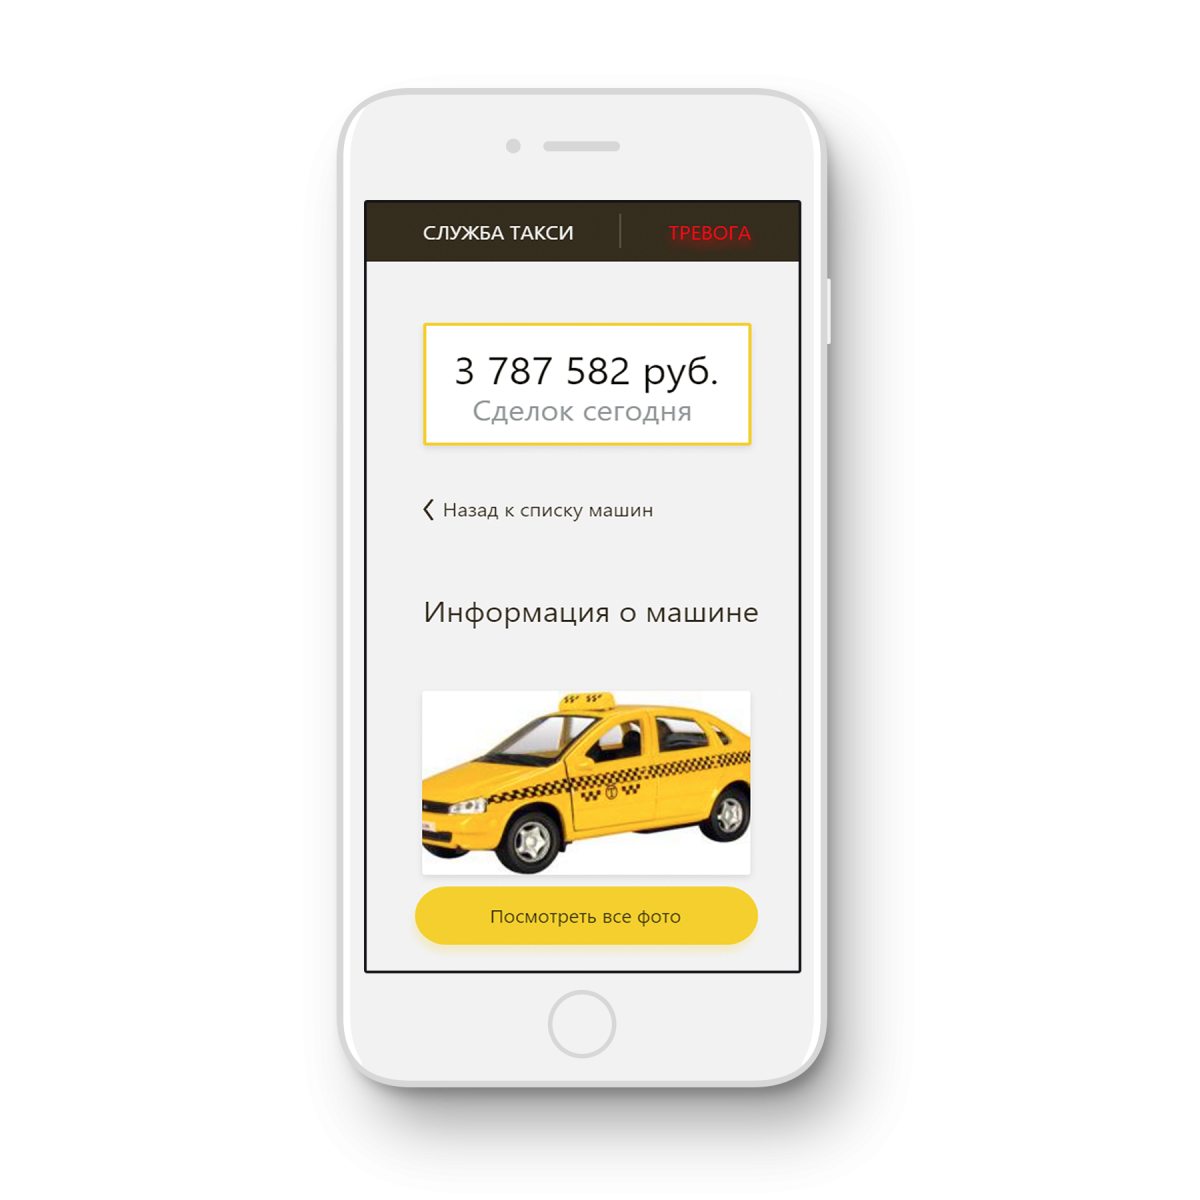 Вызвать такси дешево телефон. Приложение такси. Реклама приложения такси. Мобильное приложение такси.